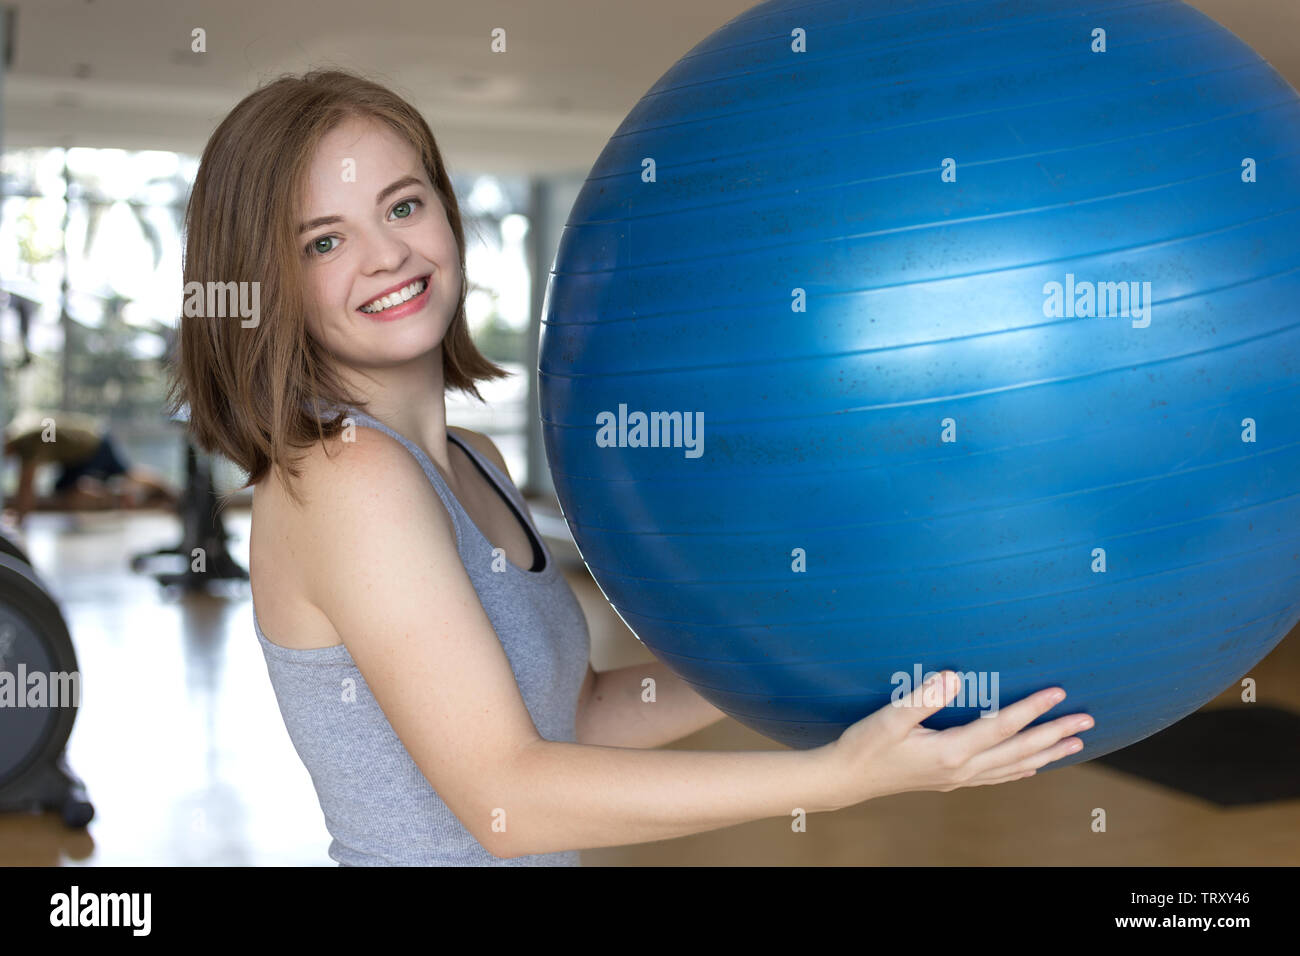 Lächelnden jungen kaukasischen Frau Mädchen mit einem blauen Gymnastikball im Fitnessstudio, Training oder Yoga Pilates Übung Stockfoto